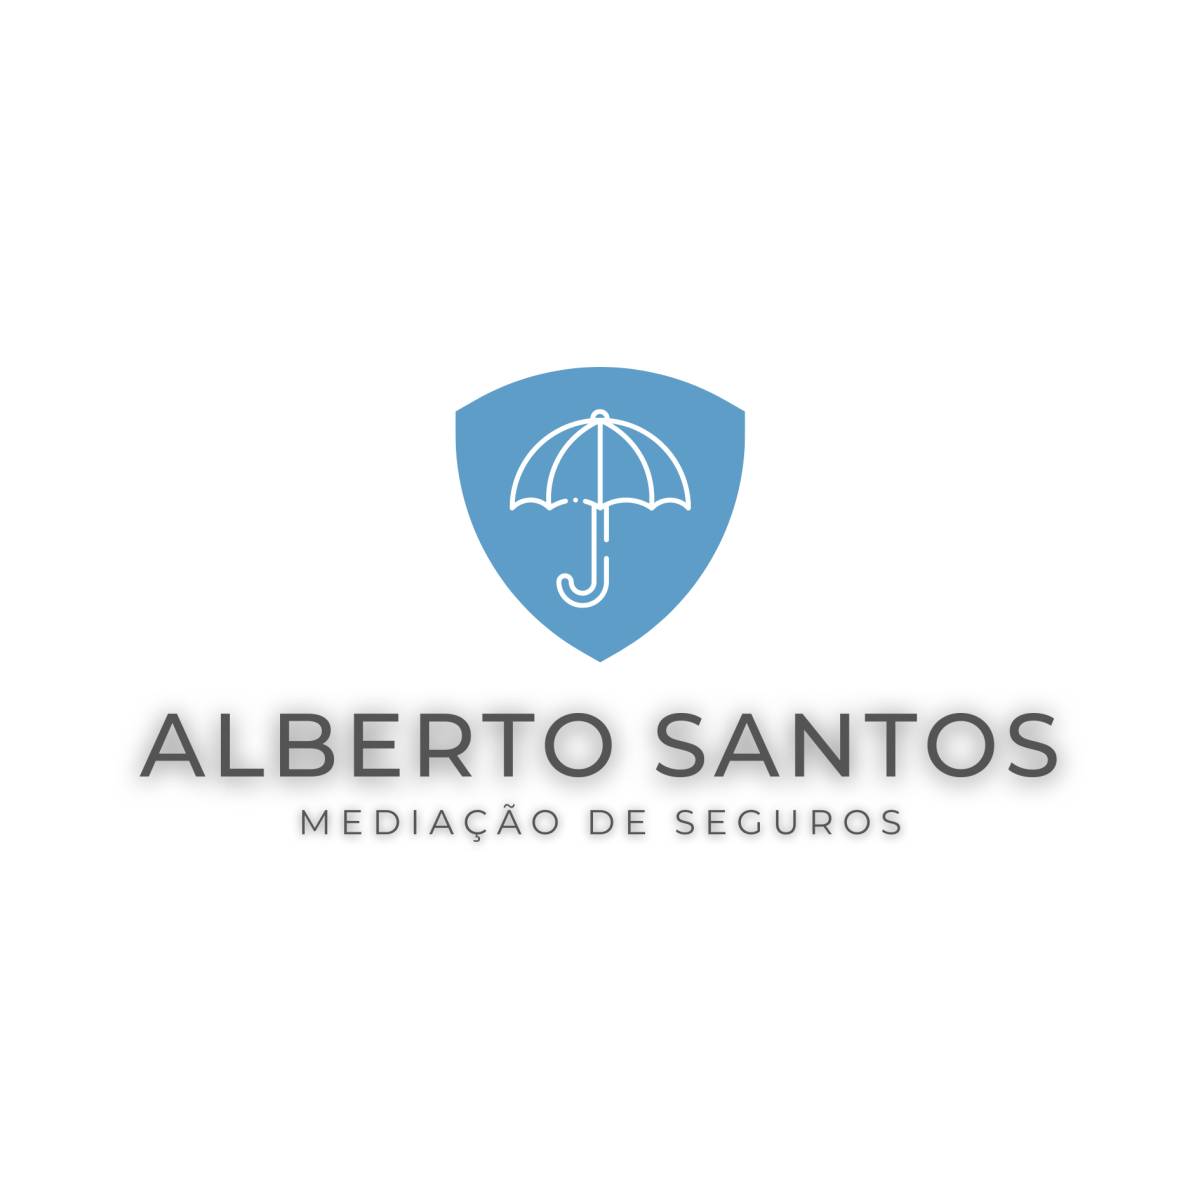 Alberto Santos - Mediação de Seguros - Arraiolos - Agentes e Mediadores de Seguros